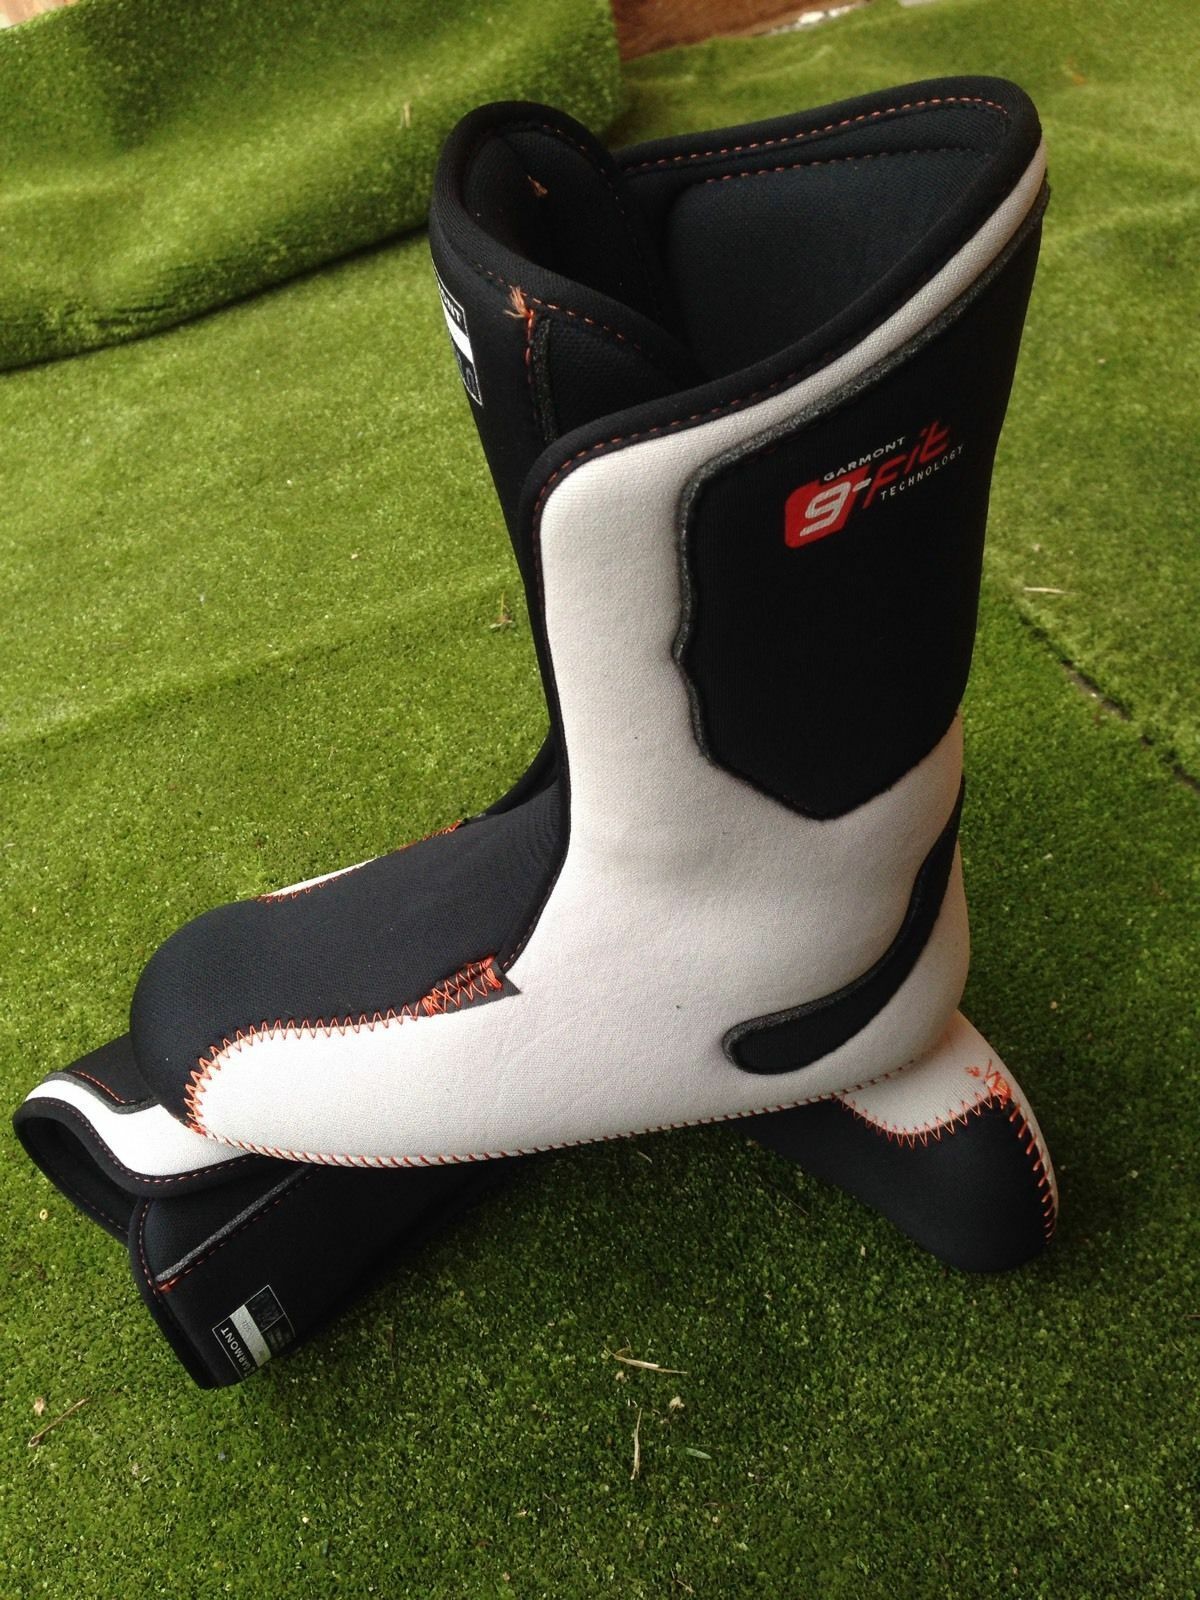 Scarpette interne di ricambio per scarponi da sci e da snowboard boots ski liners G-fit thermofit